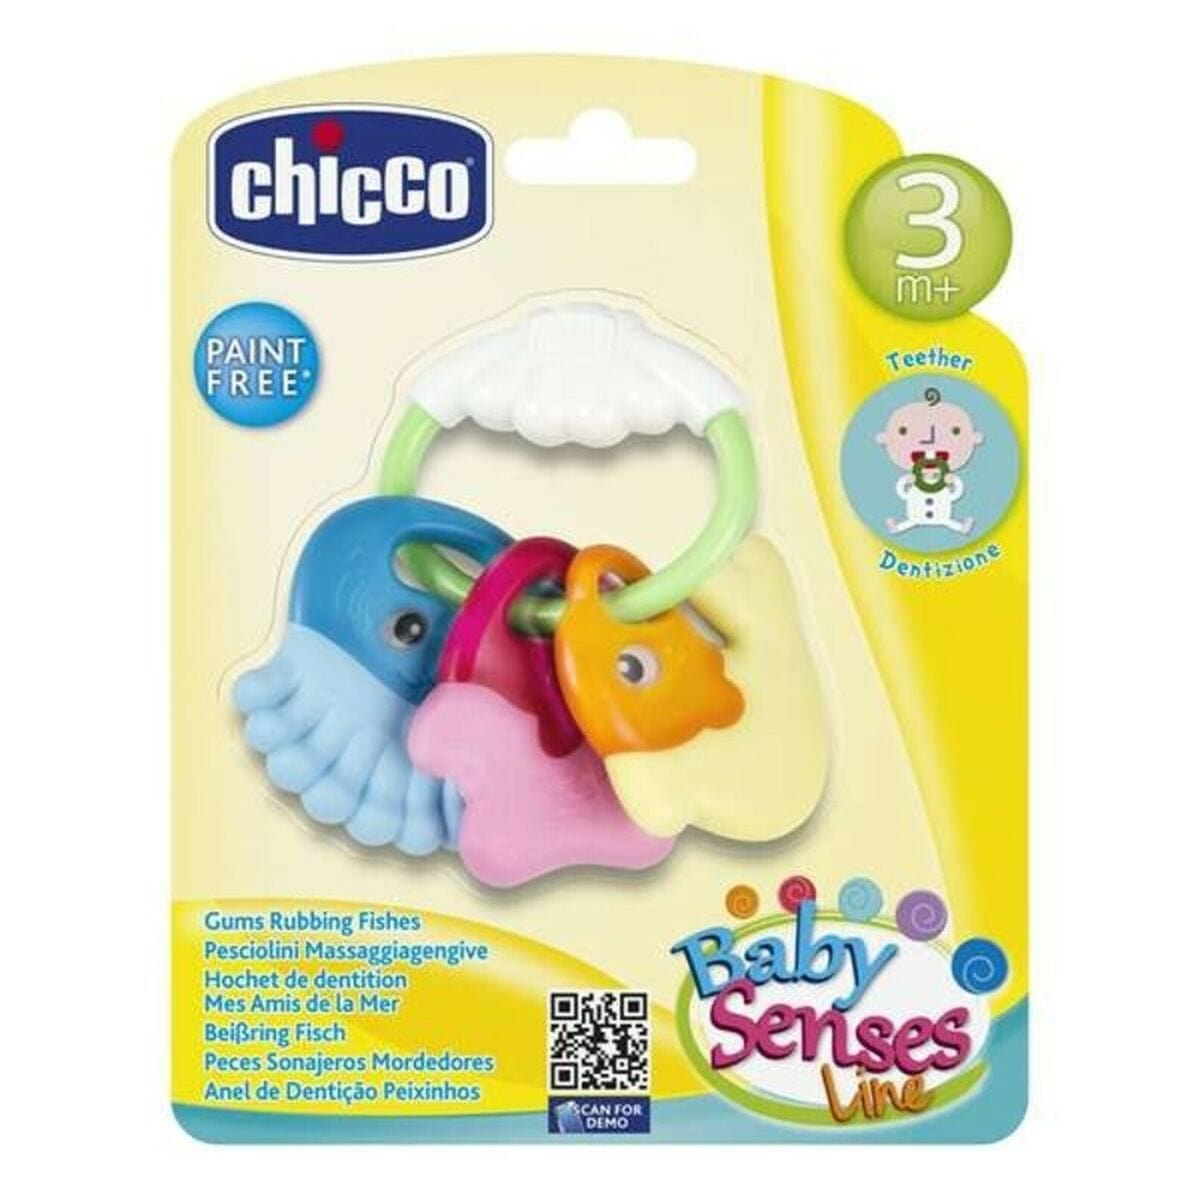 Chicco Spielzeug | Kostüme > Spielzeug und Spiele > Baby-Spielzeug Baby-Beißring Rattle Chicco PVC 11,5 x 11 x 2,5 cm (11,5 x 11 x 2,5 cm)